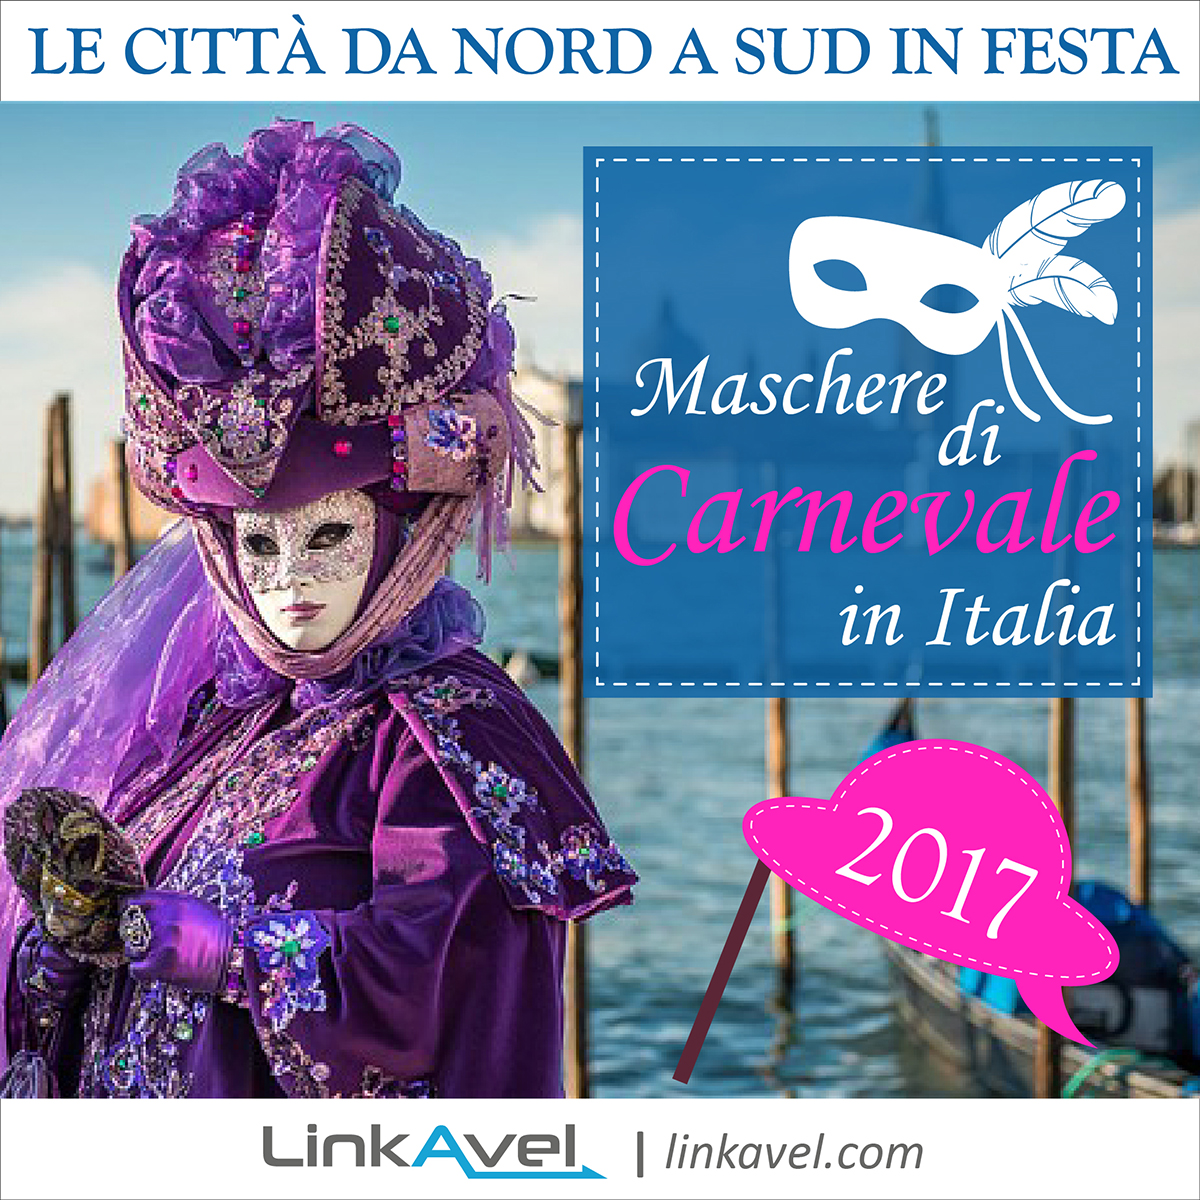 Maschere Carnevale in Italia, città in festa 2017